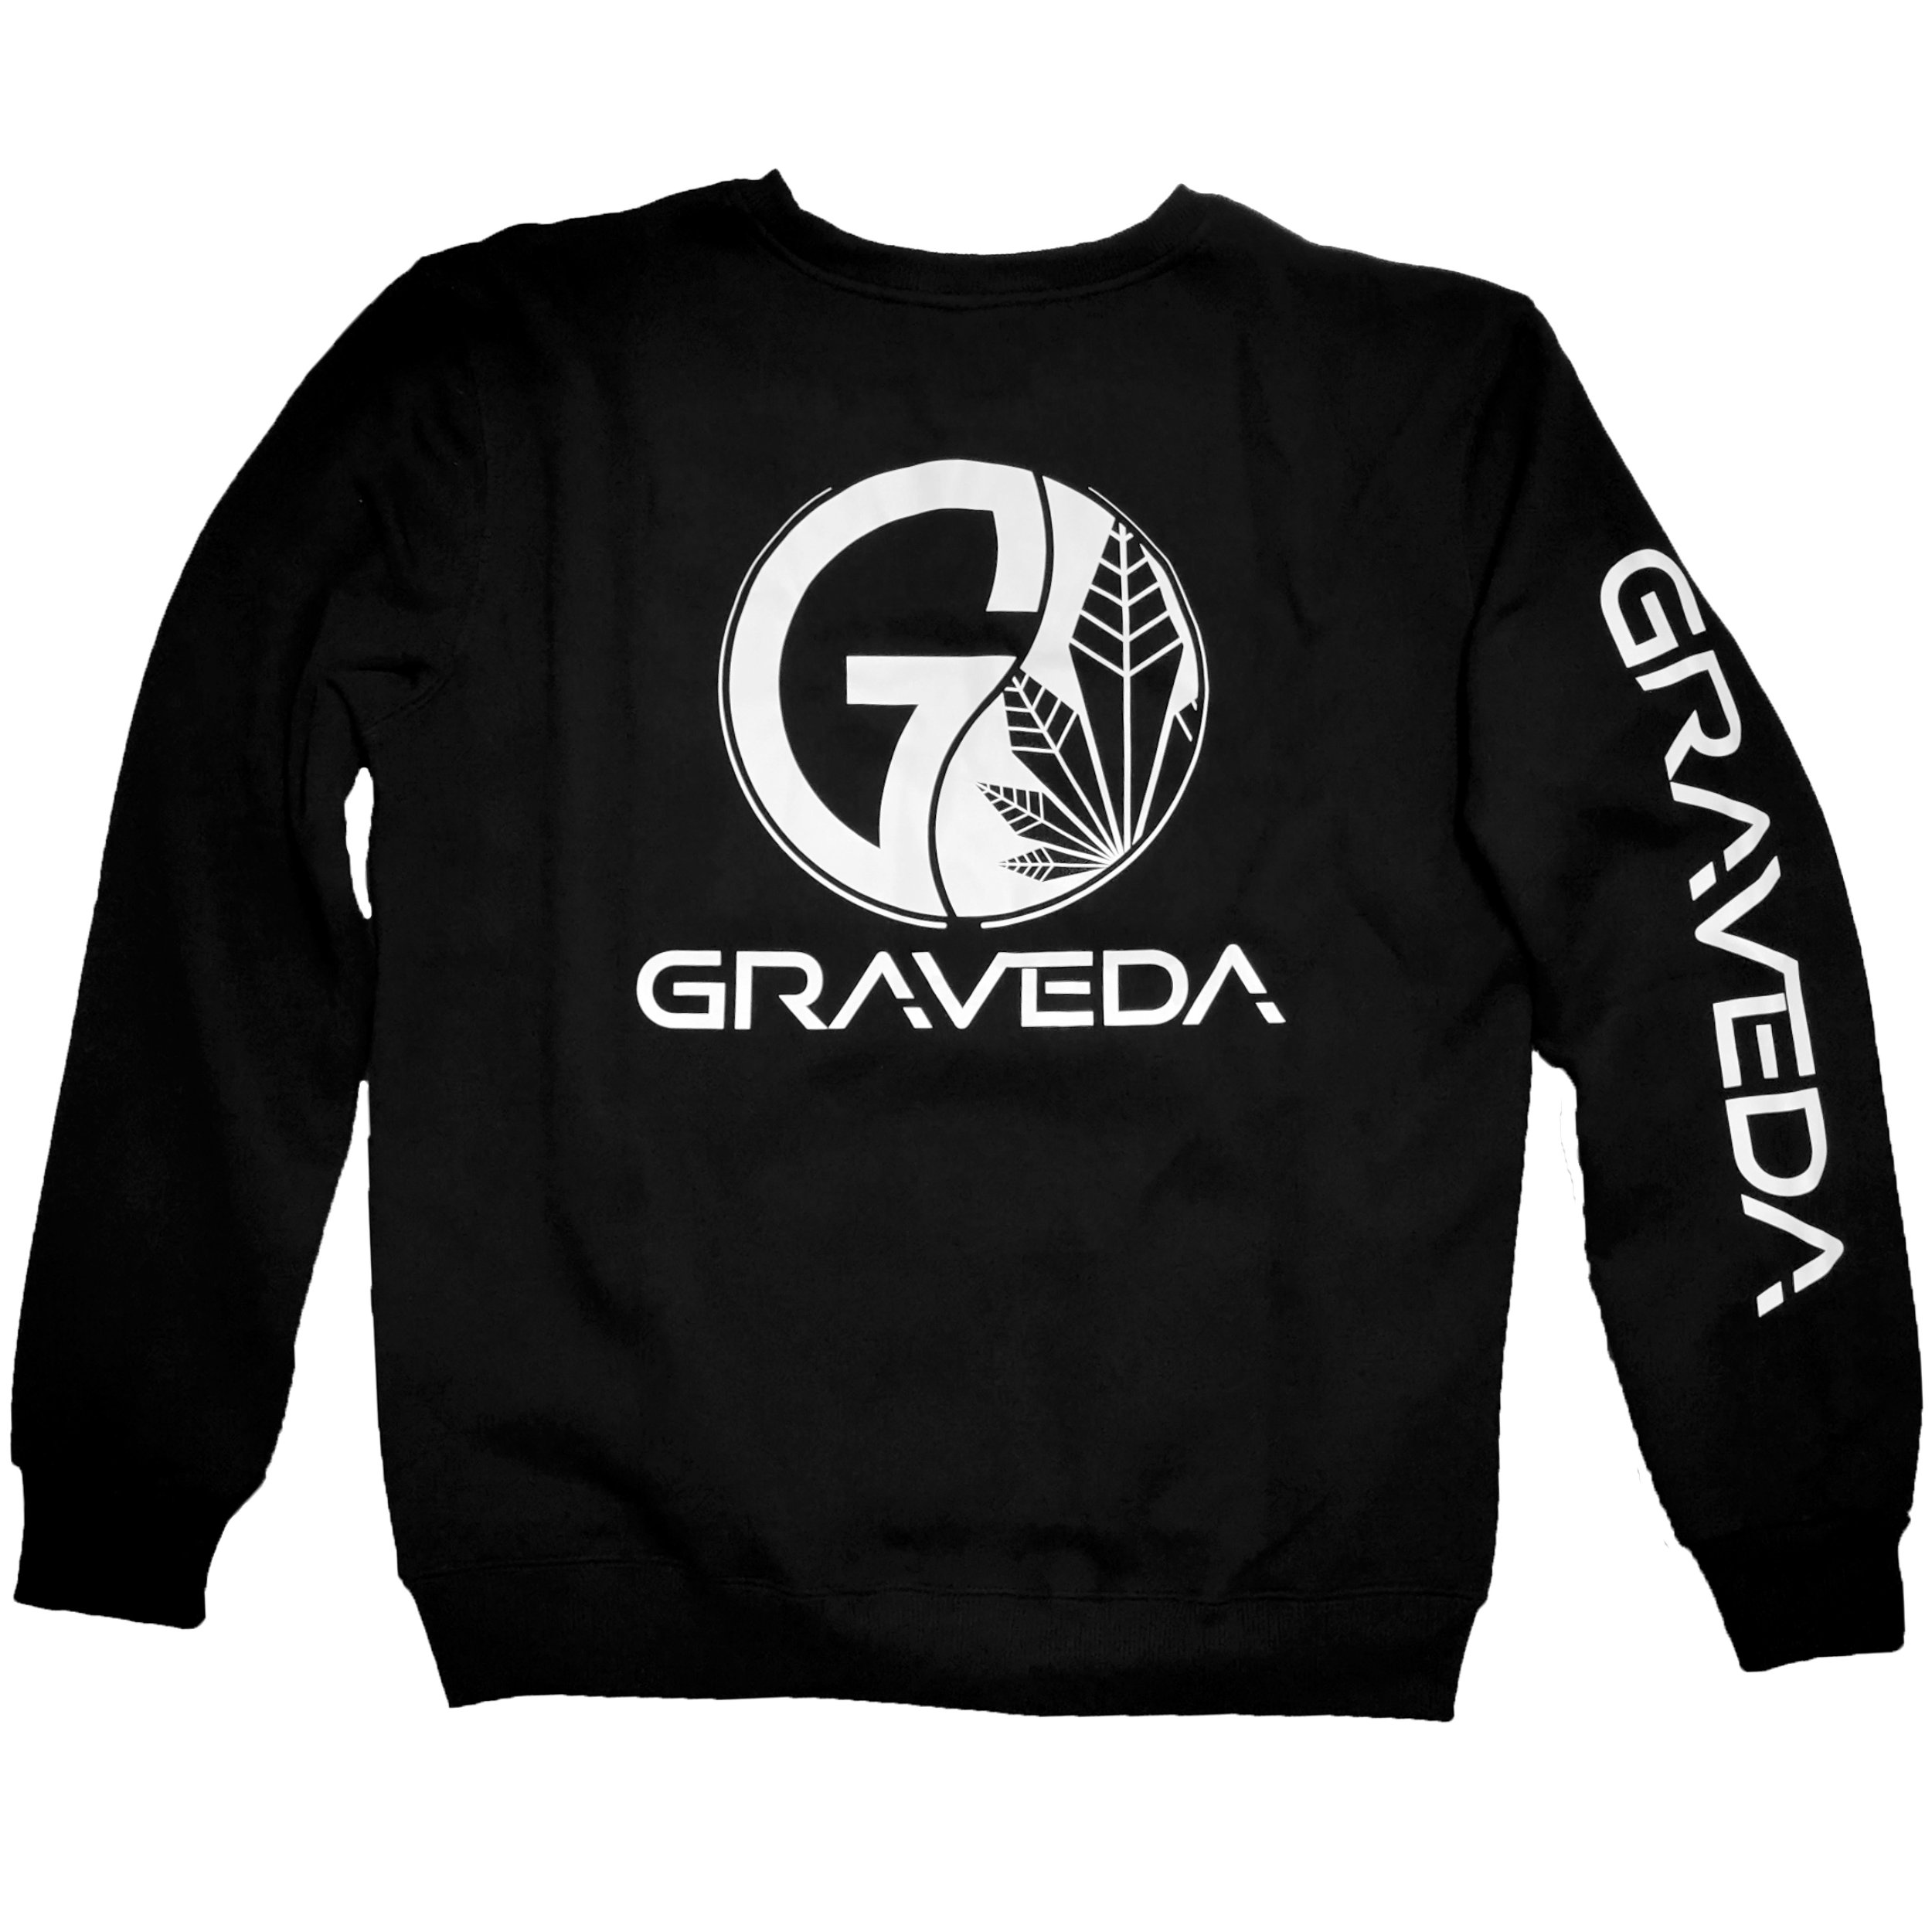 Graveda Sweatshirt, 280g/m², in schwarz oder grau